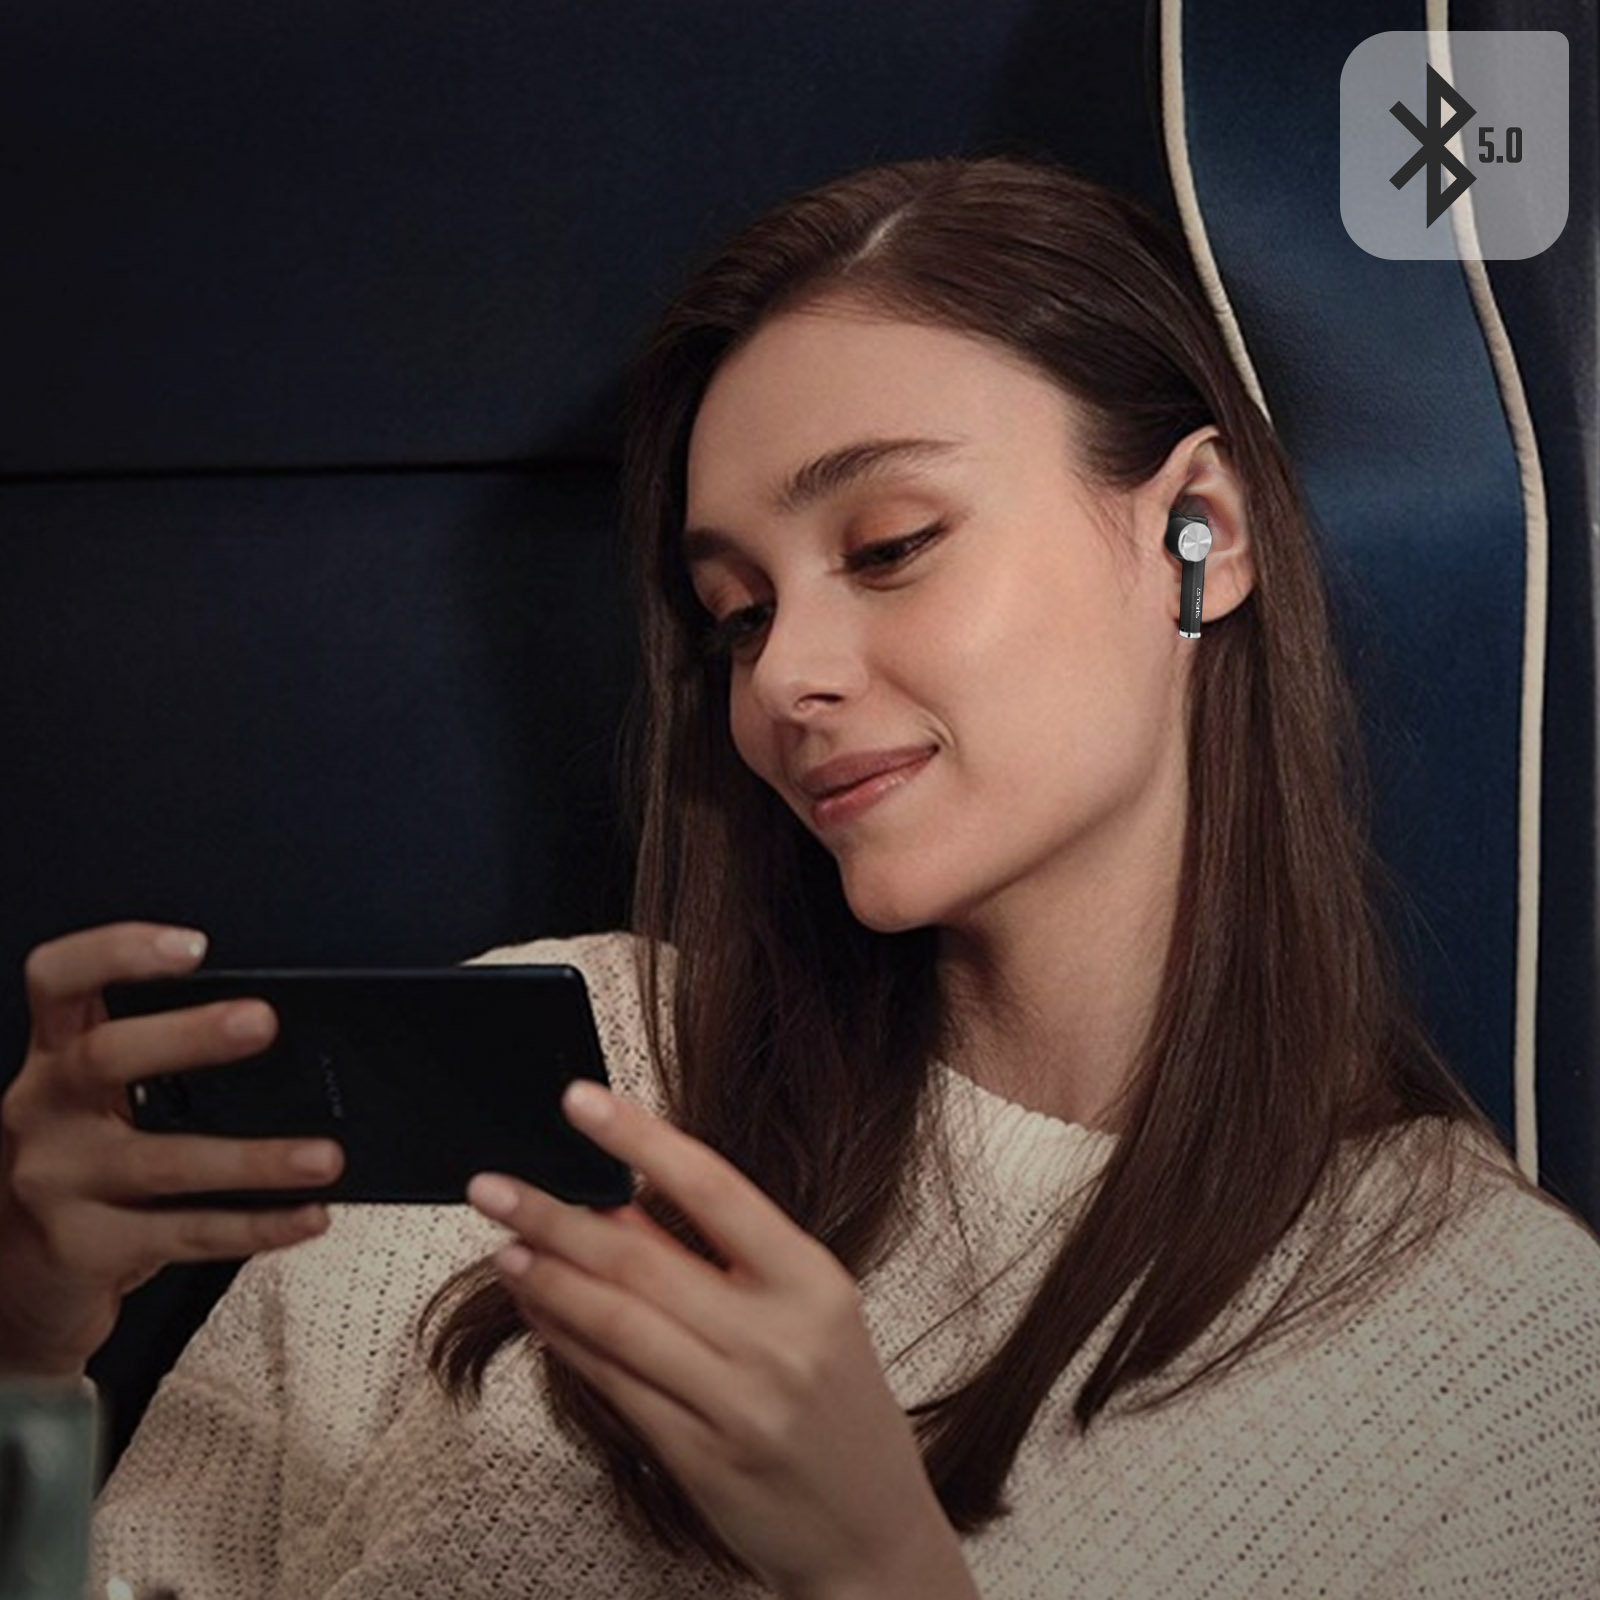 Auriculares Bluetooth Estuche De Carga 4smarts Pebble Series - Negro  MKP